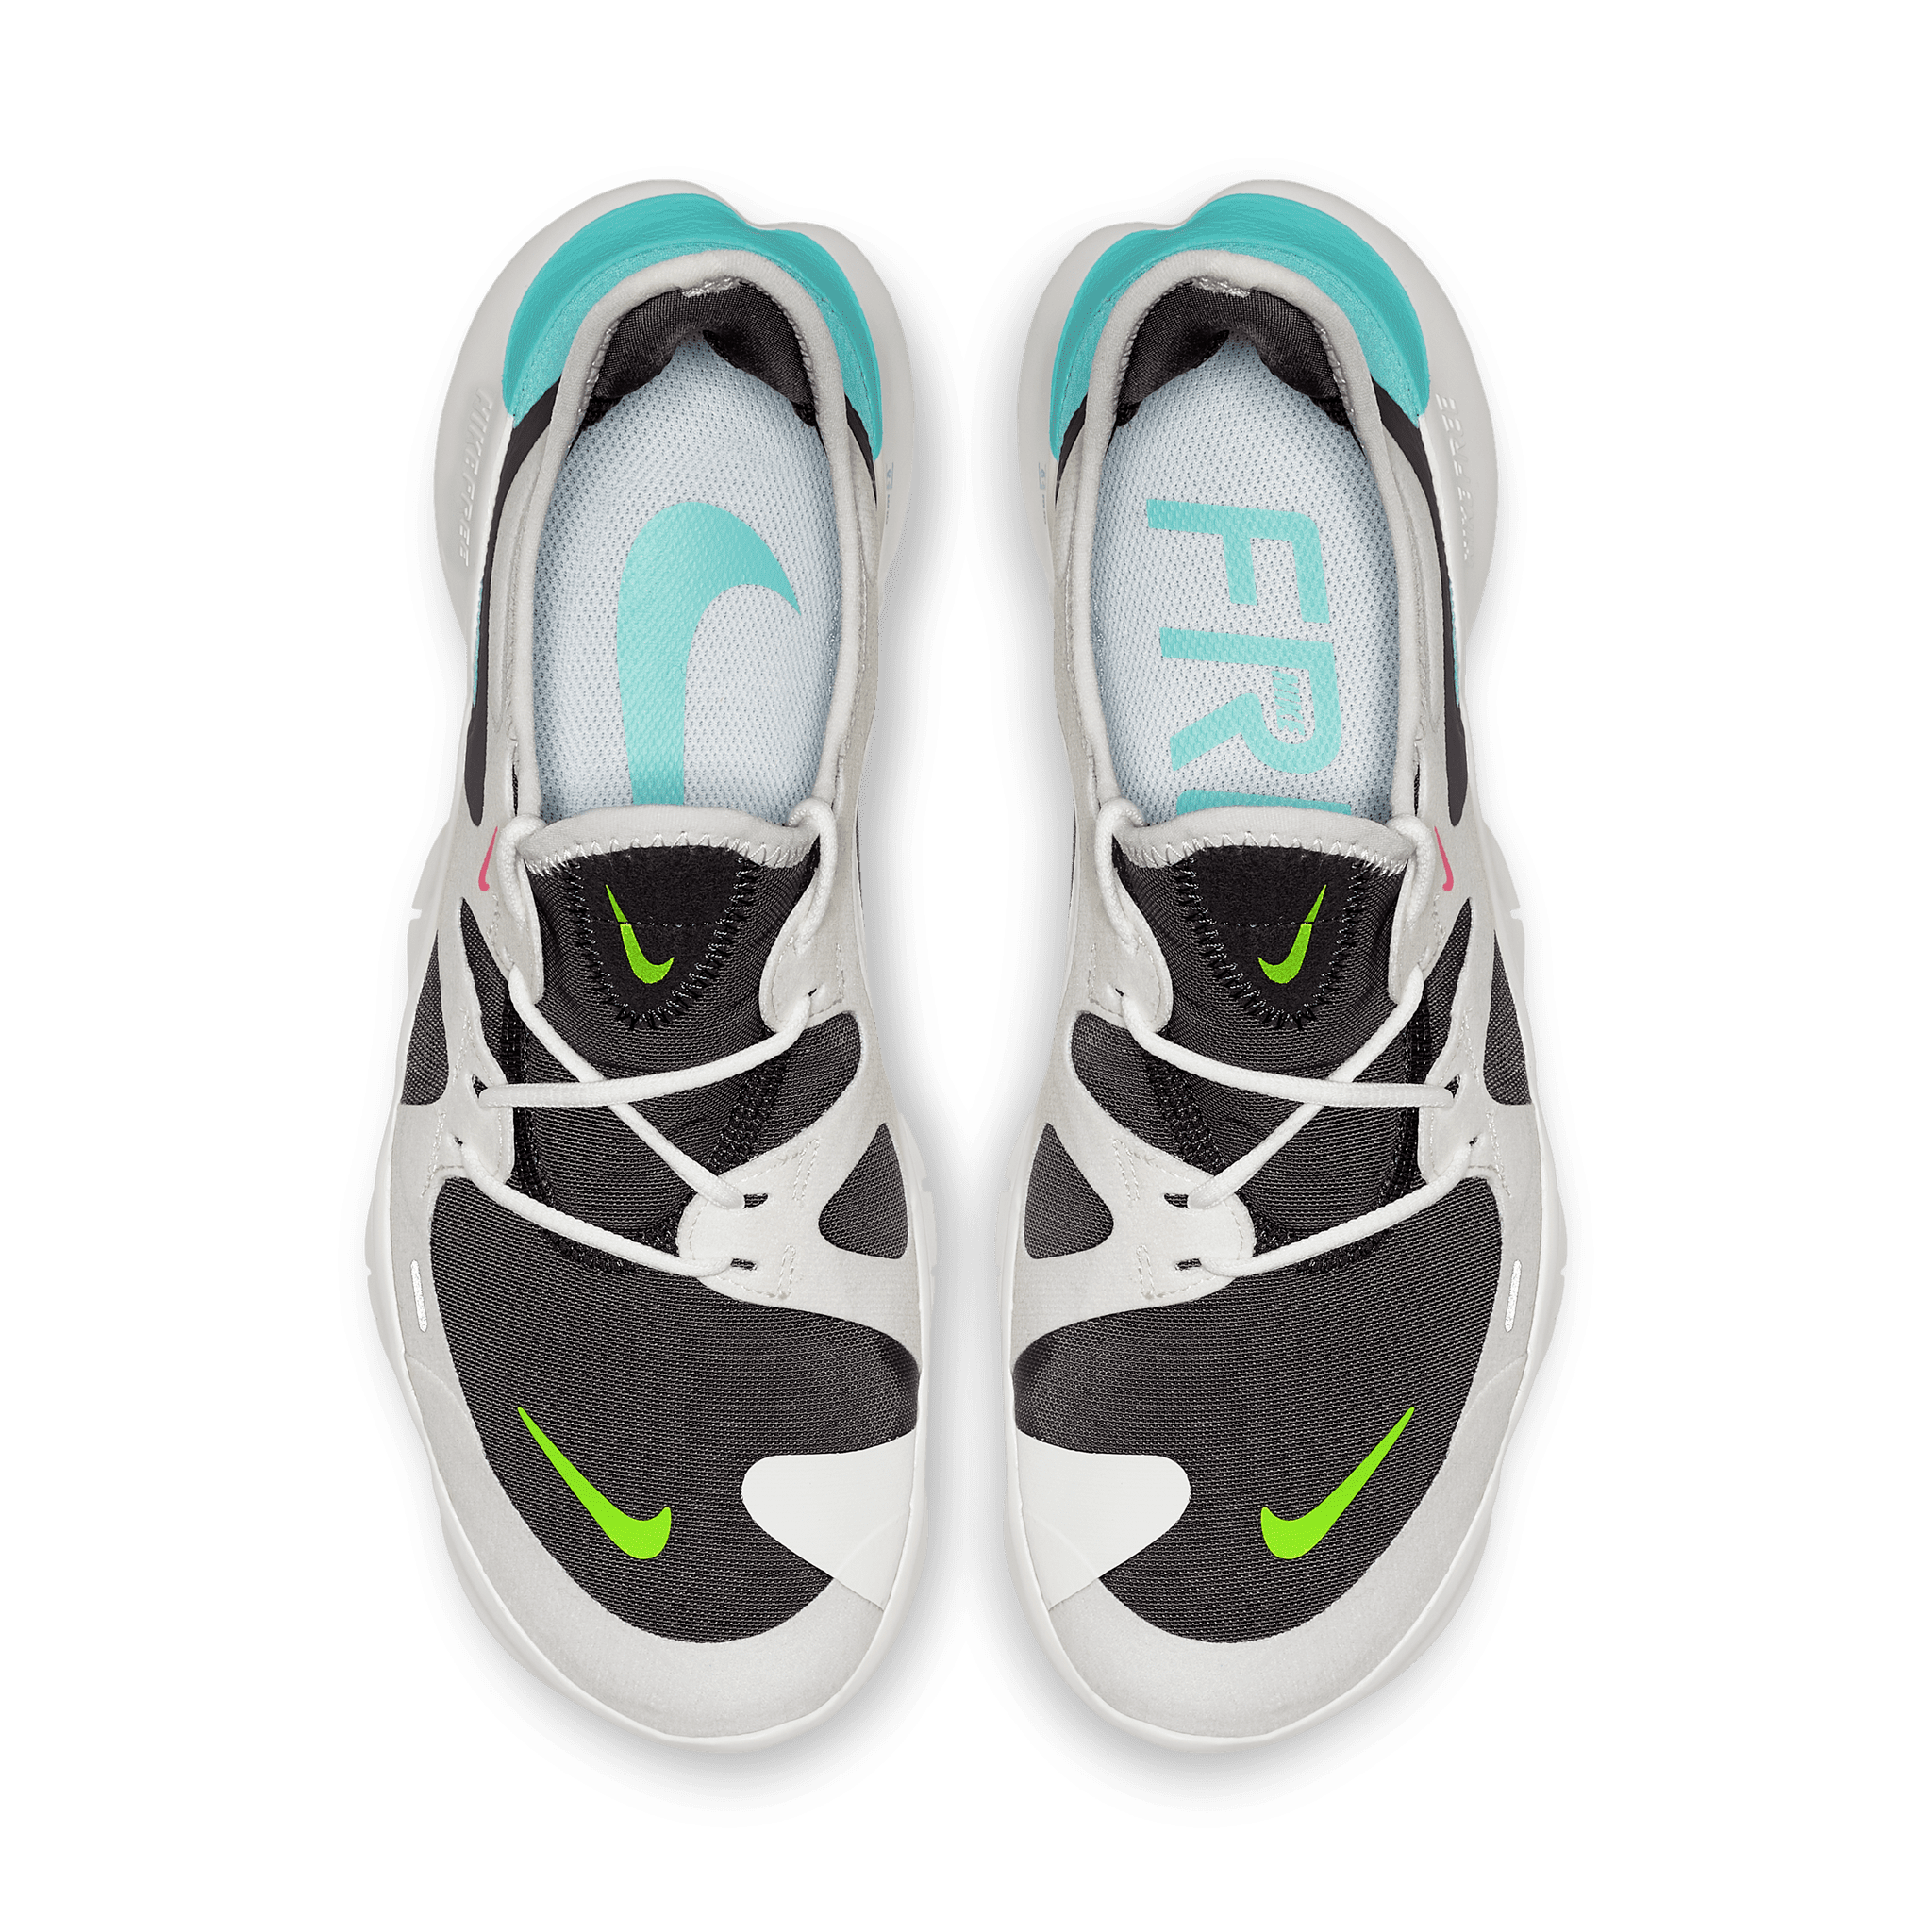 Free 5.0 Running Shoe 2019 Fitness